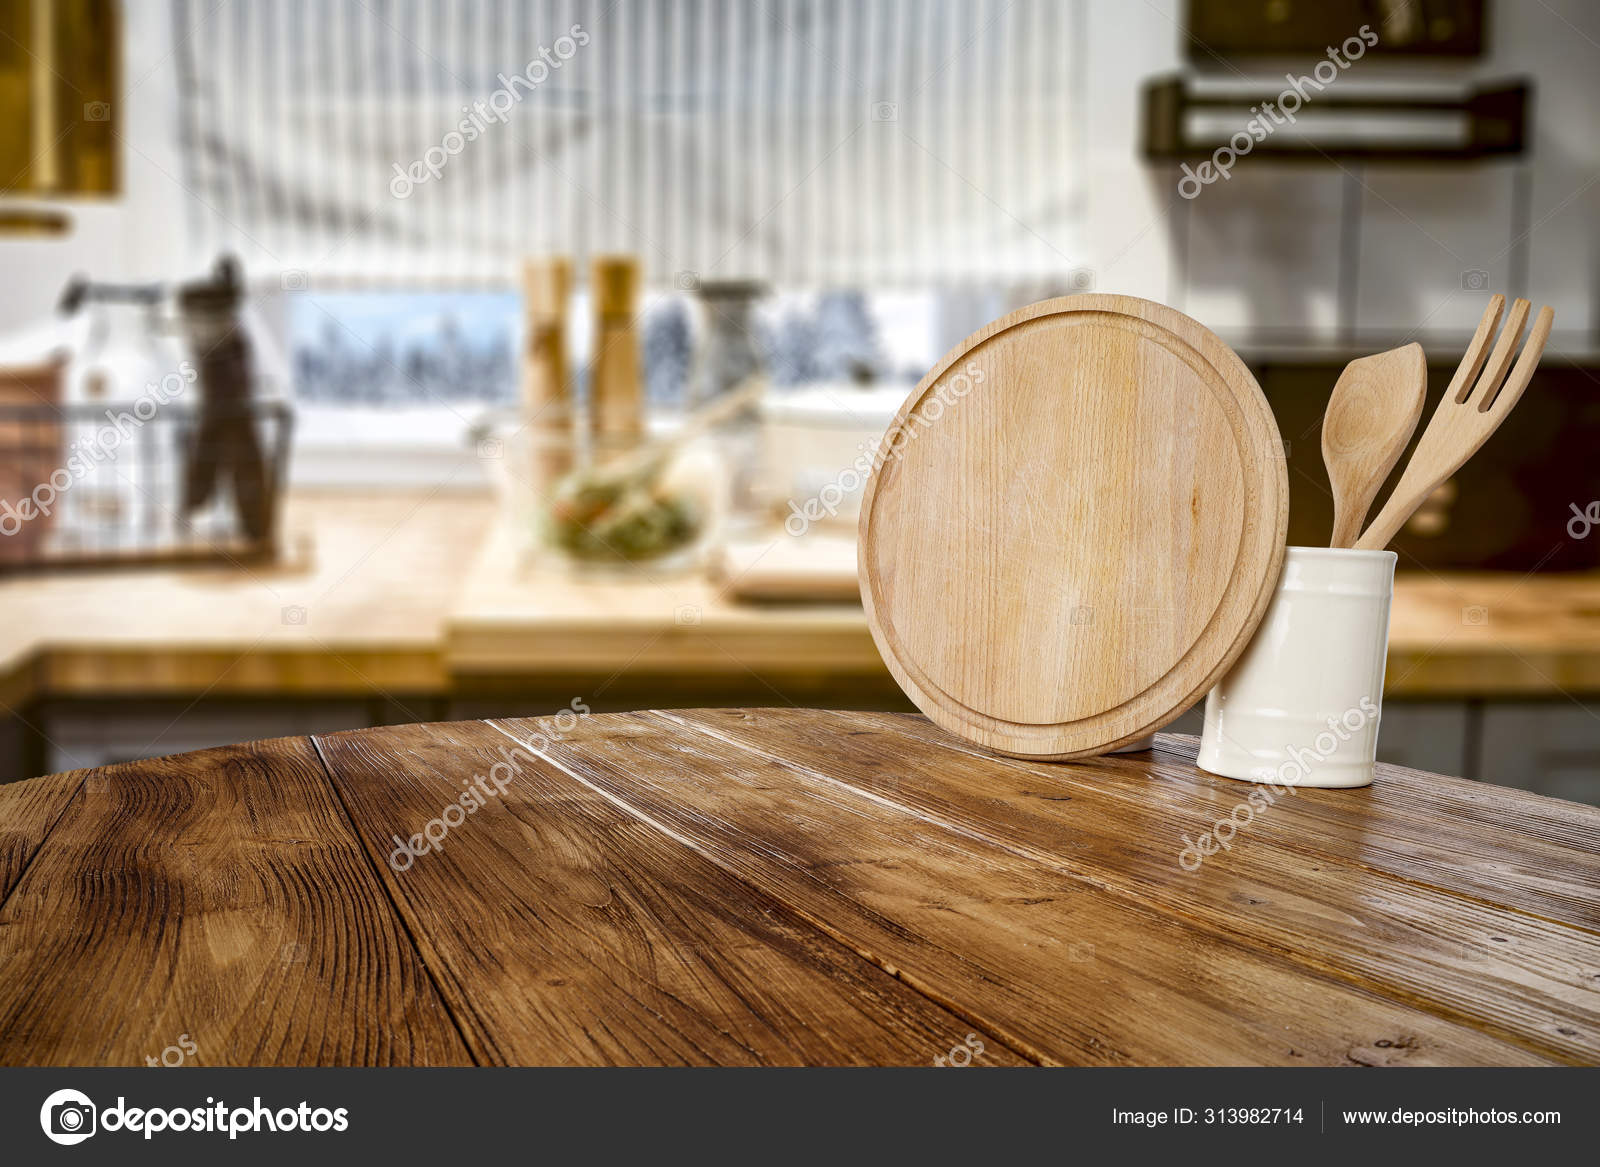 Bàn gỗ là điểm nhấn của phòng bếp. Hình ảnh bề mặt bàn gỗ trống rỗng với phông nền nhoè phòng bếp cổ điển sẽ làm bạn trầm trồ với sự thanh lịch và sự tinh tế. Bề mặt bàn gỗ được thiết kế đệm cao, cho phép bạn tận hưởng không gian làm việc thoải mái hơn. Nền gỗ phòng bếp sẽ làm nổi bật phòng bếp của bạn và xóa tan những nỗi lo về không gian.